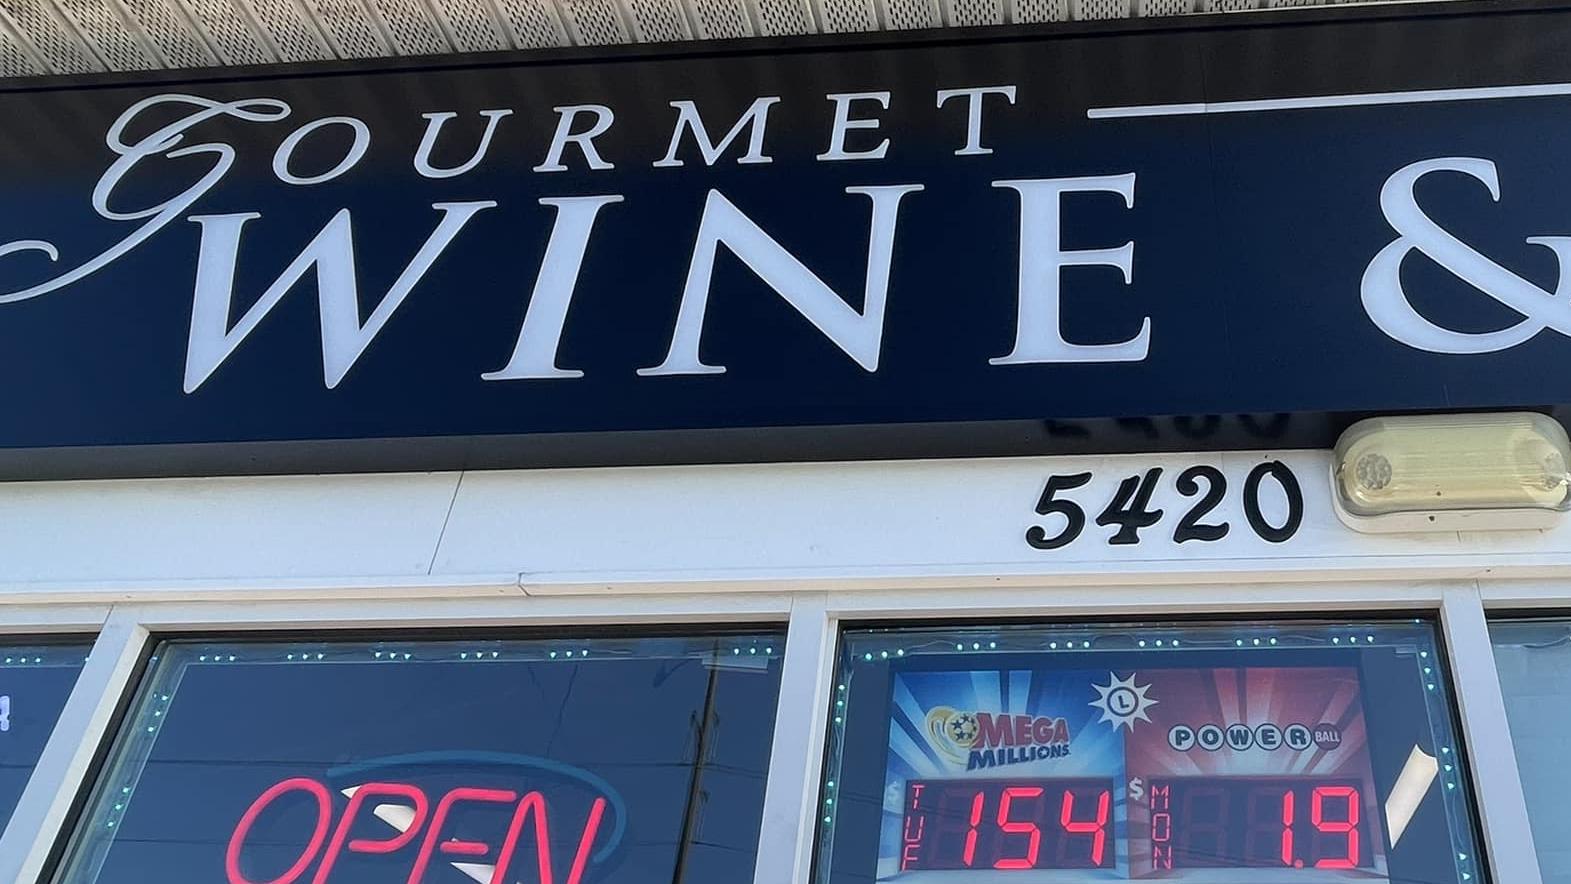 Gourmet Wine & Spirit/Liquor Stores                                                                                                                                                                                           